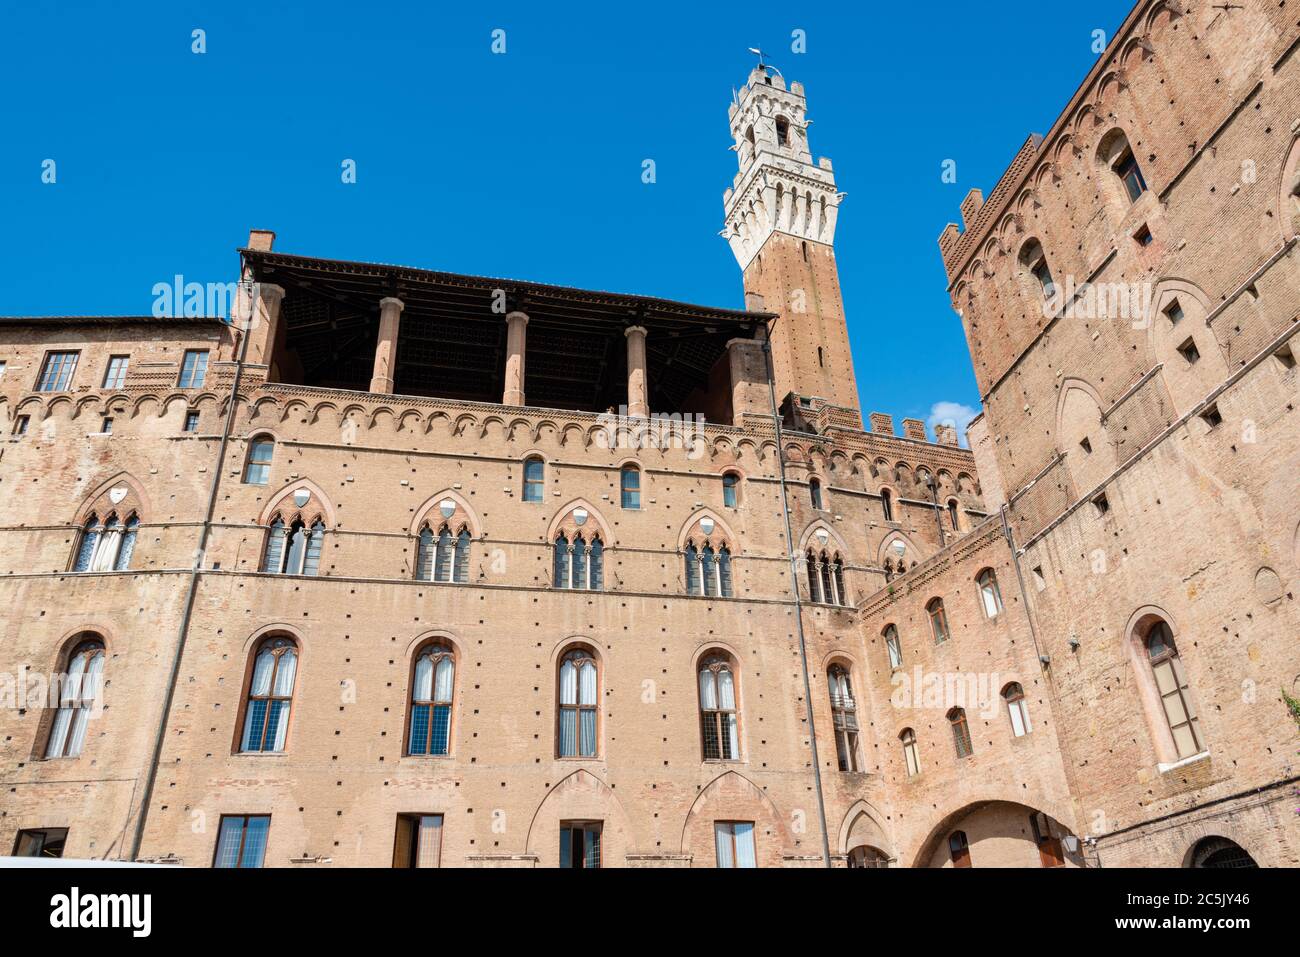 Das Rathaus von Siena und der berühmte Rathausturm von der Rückseite betractet. Foto de stock